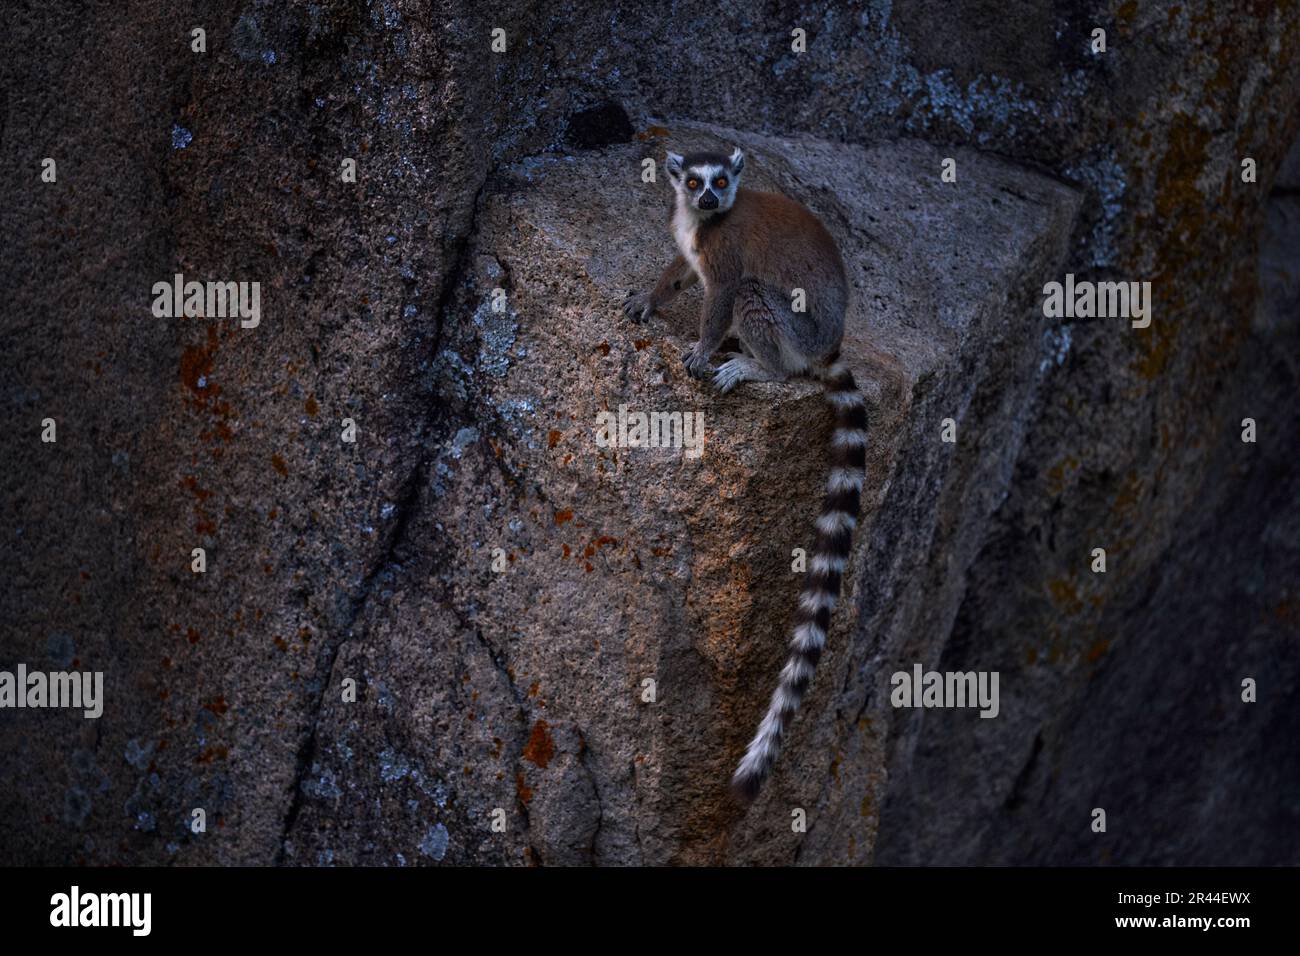 Scimmia con roccia di granito, tramonto. Fauna selvatica del Madagascar, Lemur dalla coda ad anello, Lemur catta. Animale da Madagascar, Africa, occhi arancioni. Luce solare serale Foto Stock